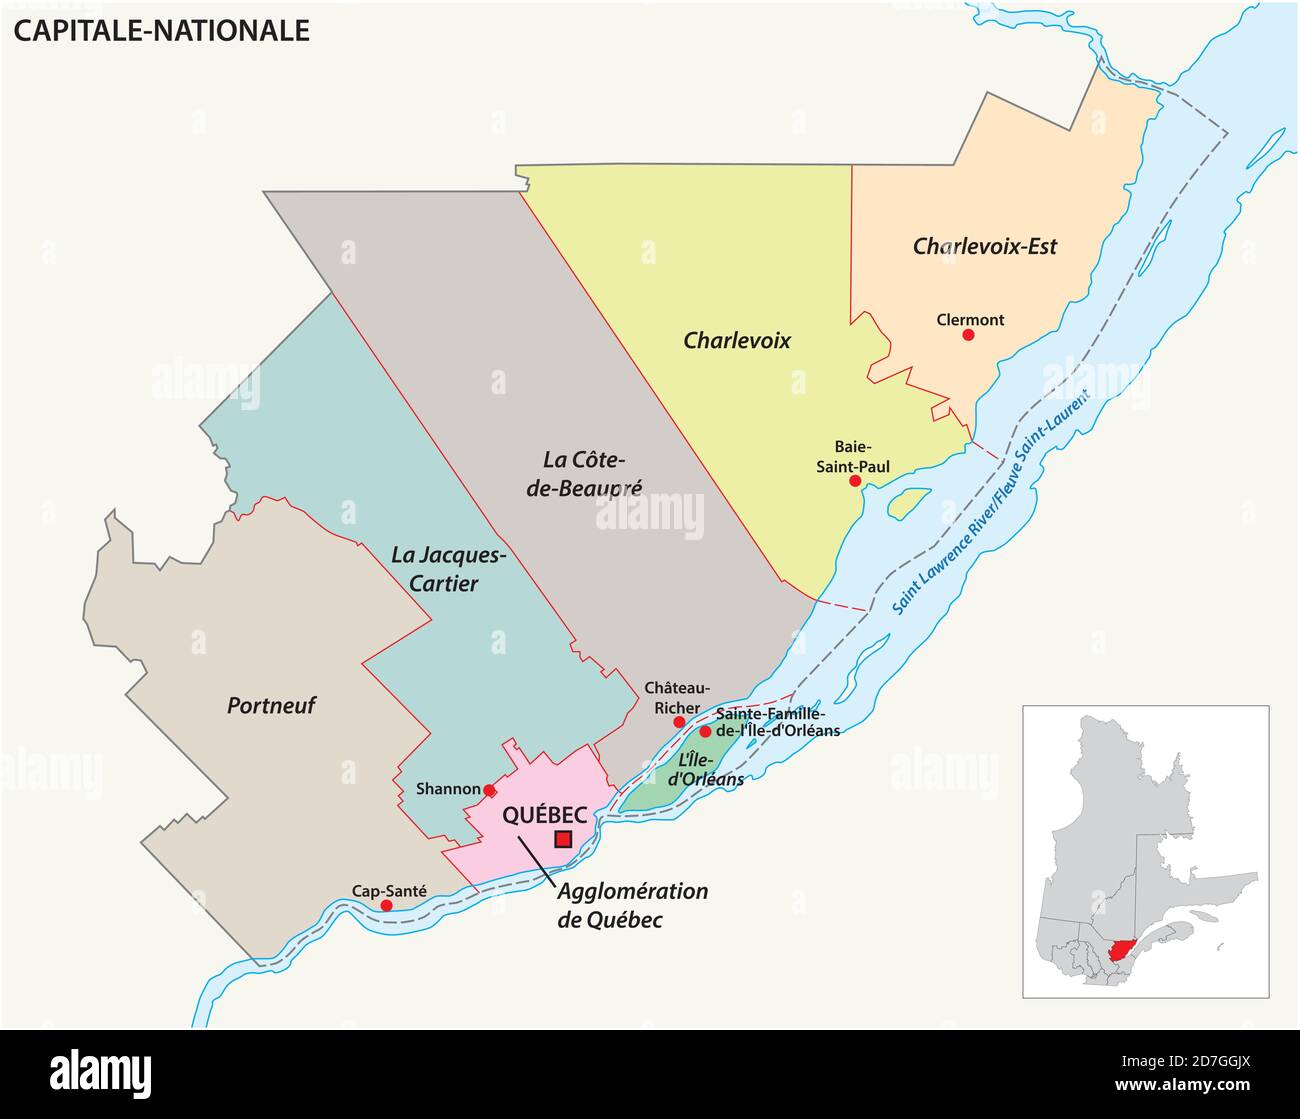 Mappa vettoriale della Regione amministrativa capitale Nationale Quebec, Canada Illustrazione Vettoriale